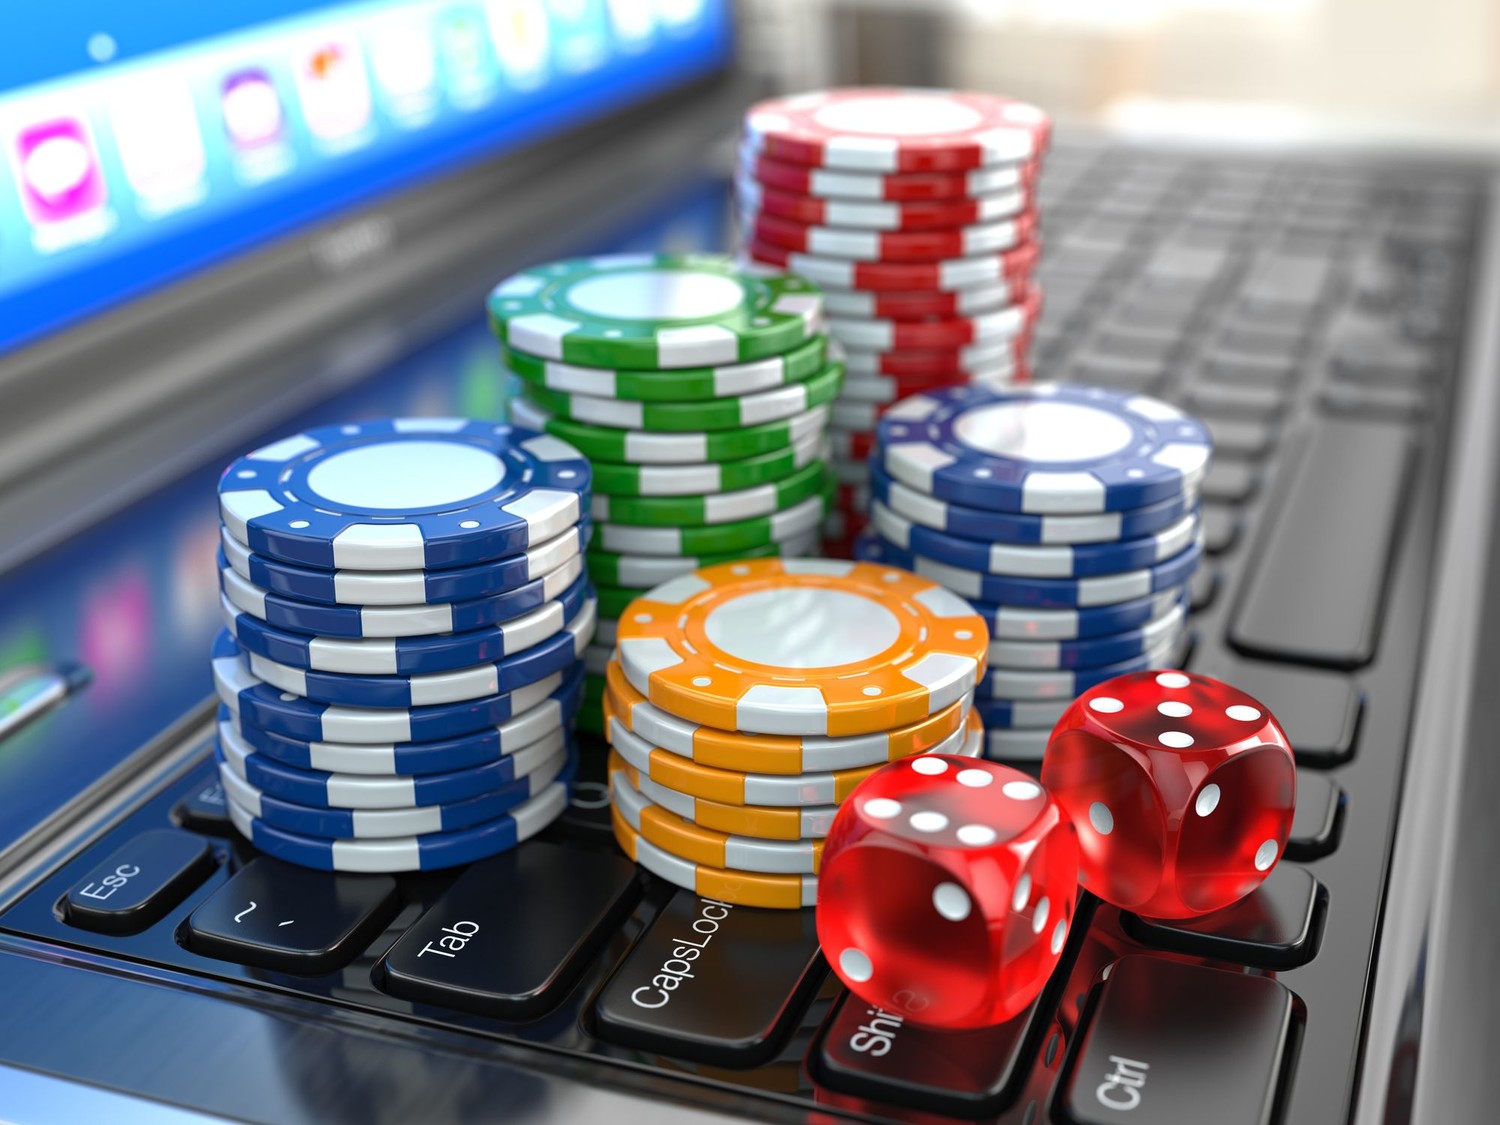 преимущества онлайн казино